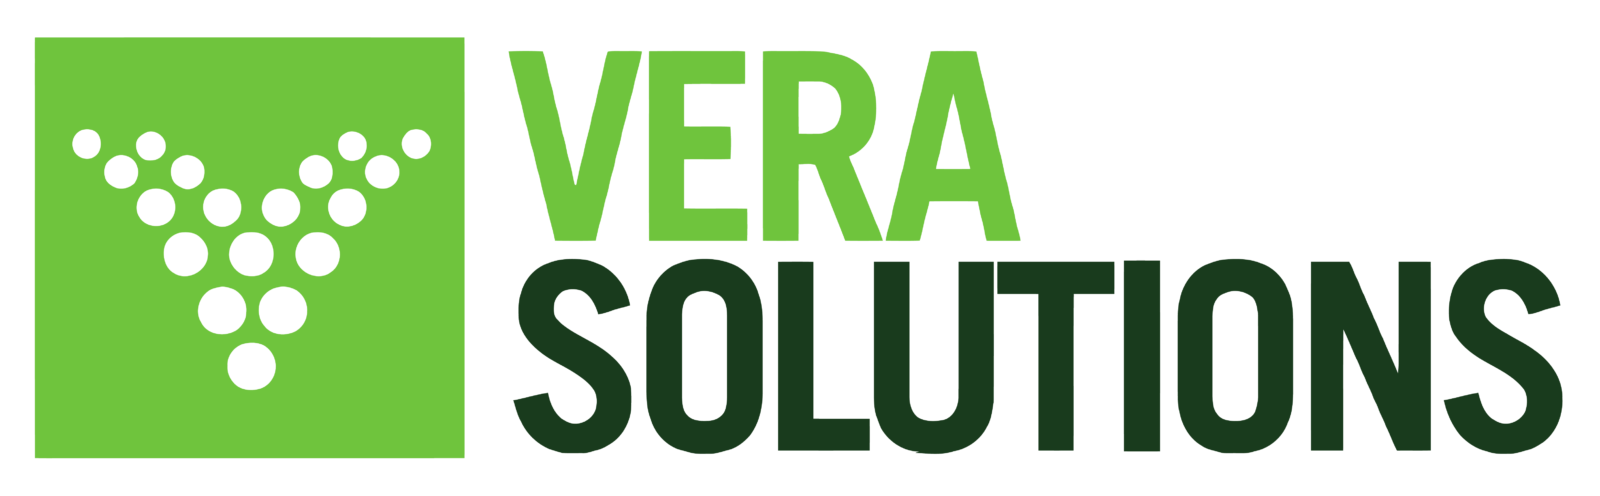 Vera Solutions